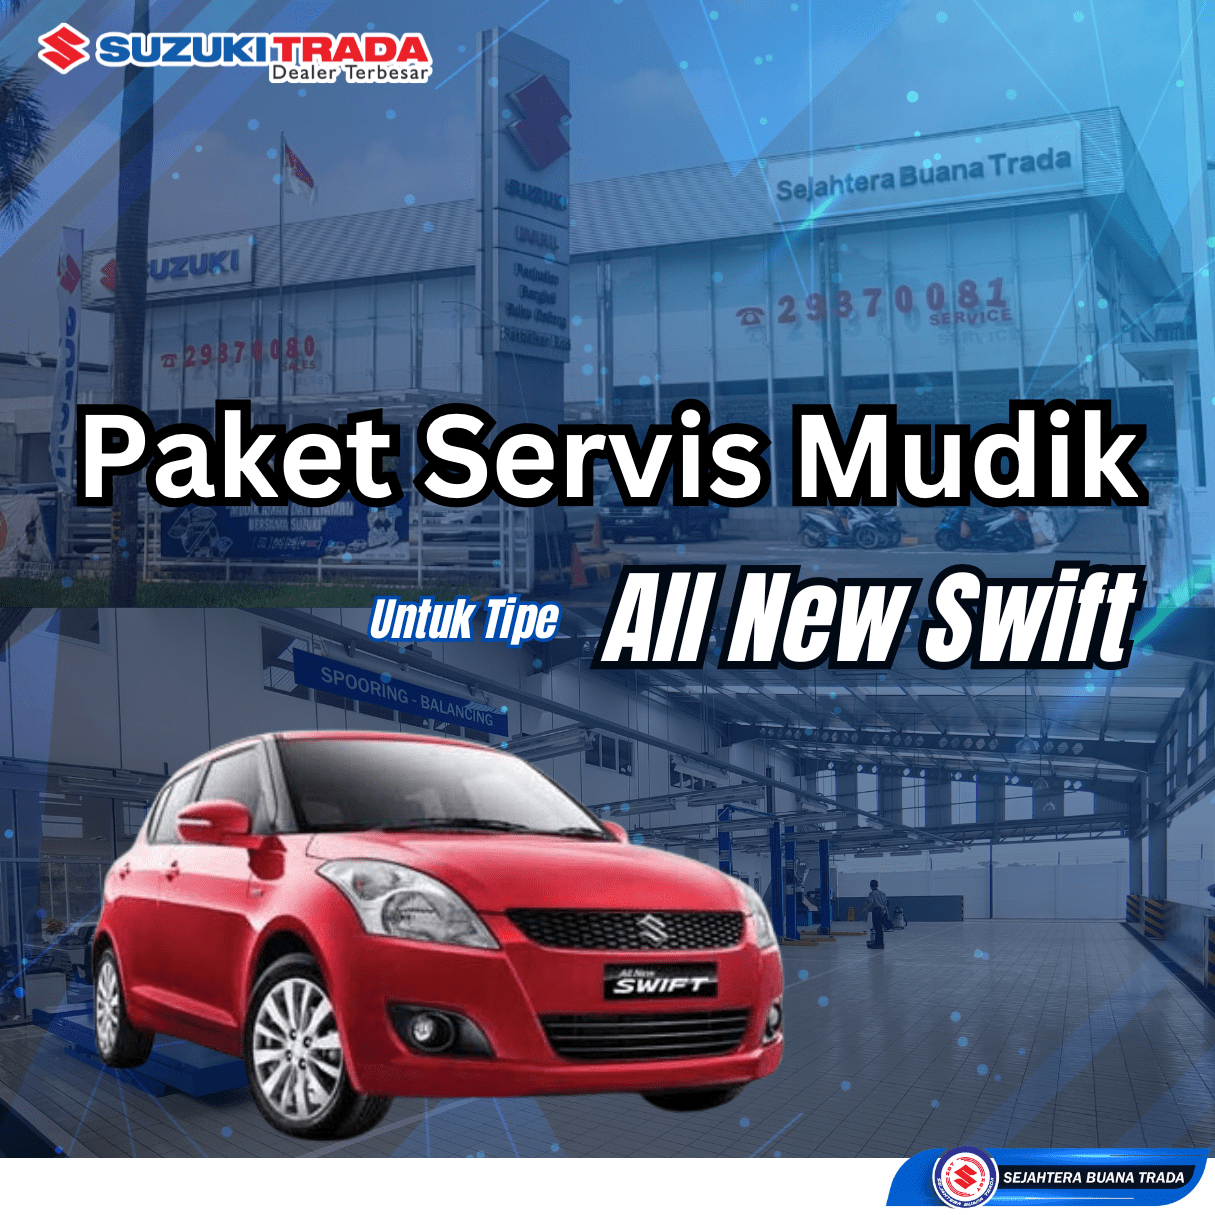 Paket Servis Mudik All New Swift